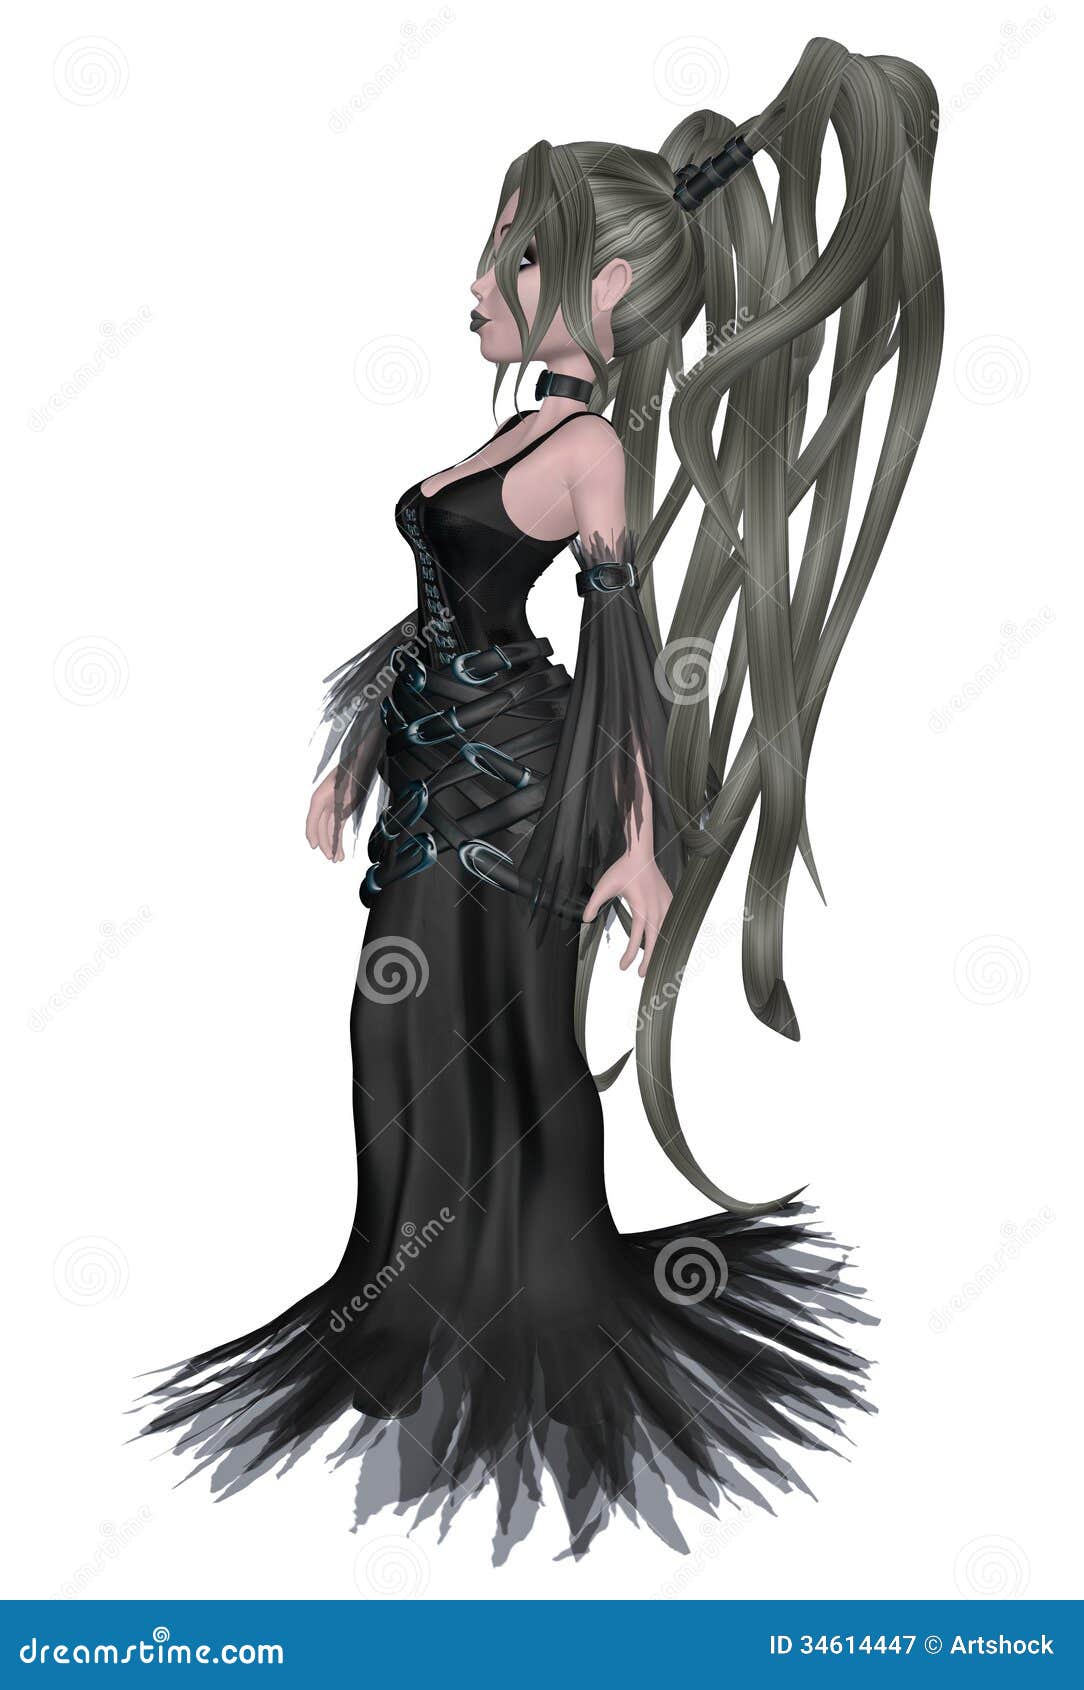 Premium AI Image | Expressive anime chibi illustration of a sad goth girl  Created using Generative AI